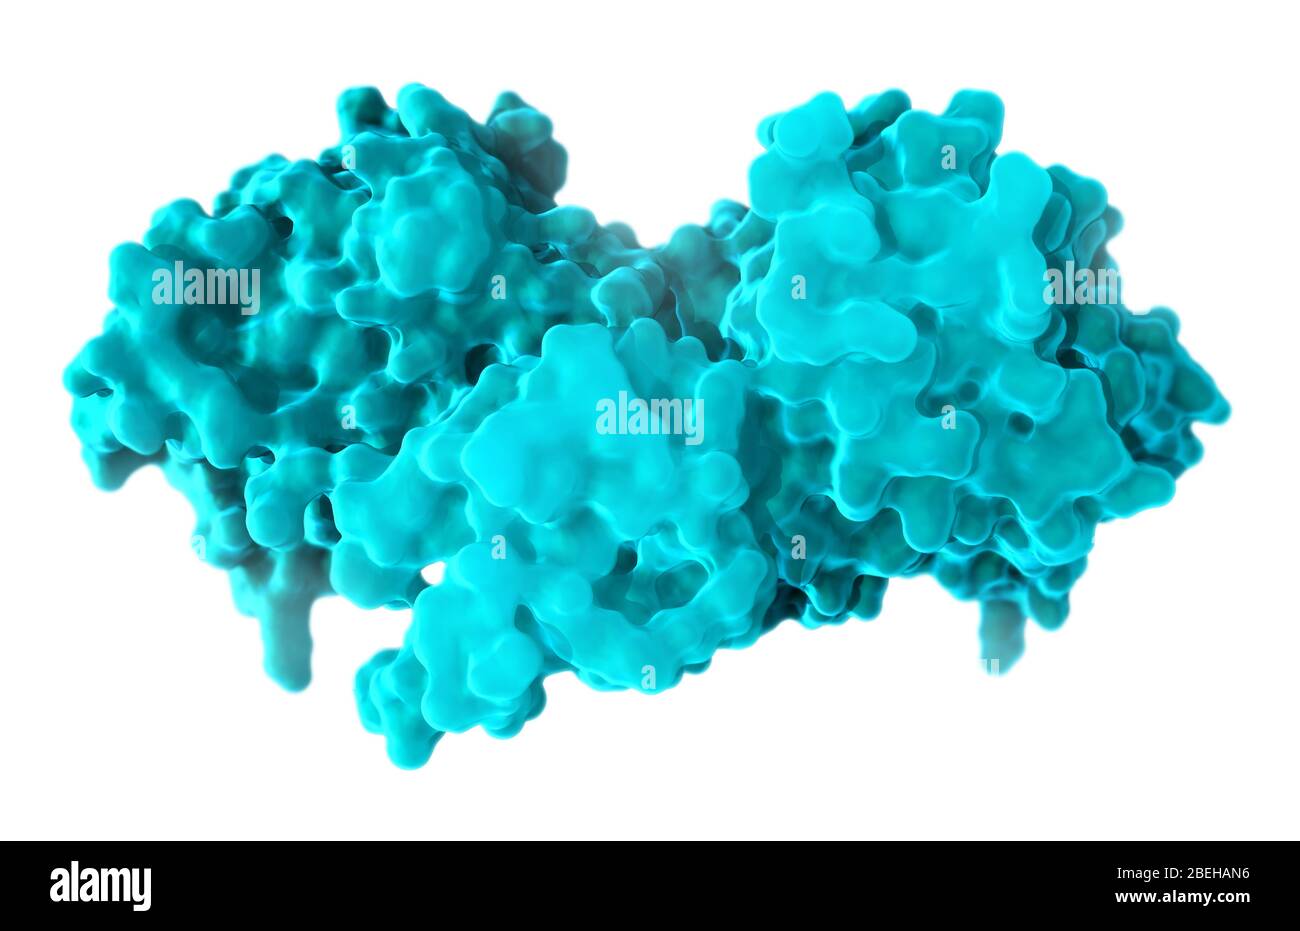 B-Raf Protein, Molecular Model Stock Photo